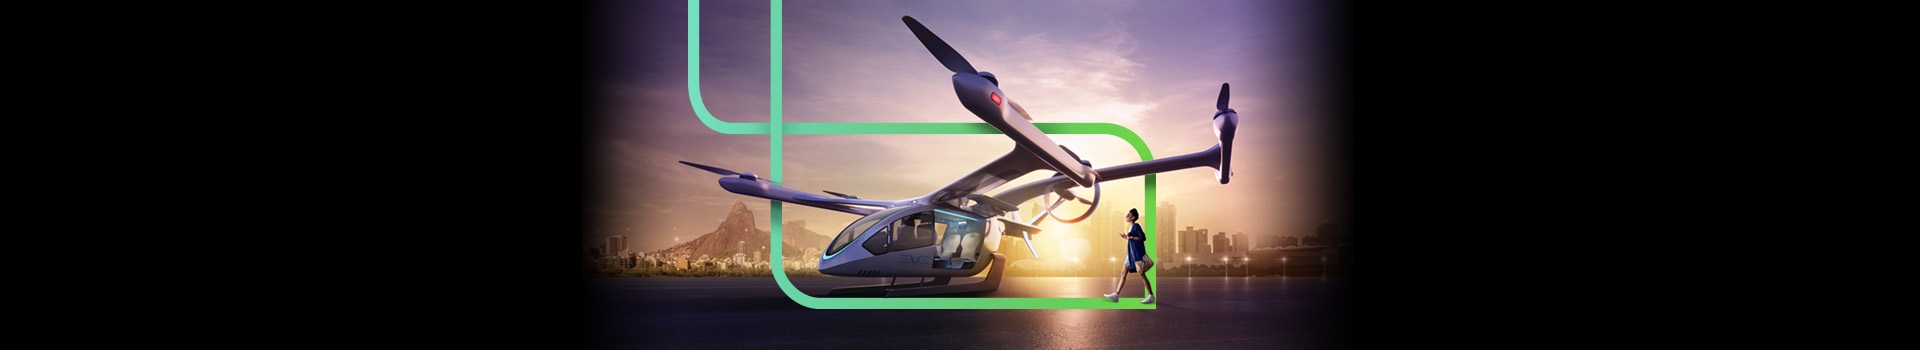 Na imagem o carro voador vai pousando em um heliponto e uma pessoa vai se aproximando do veículo